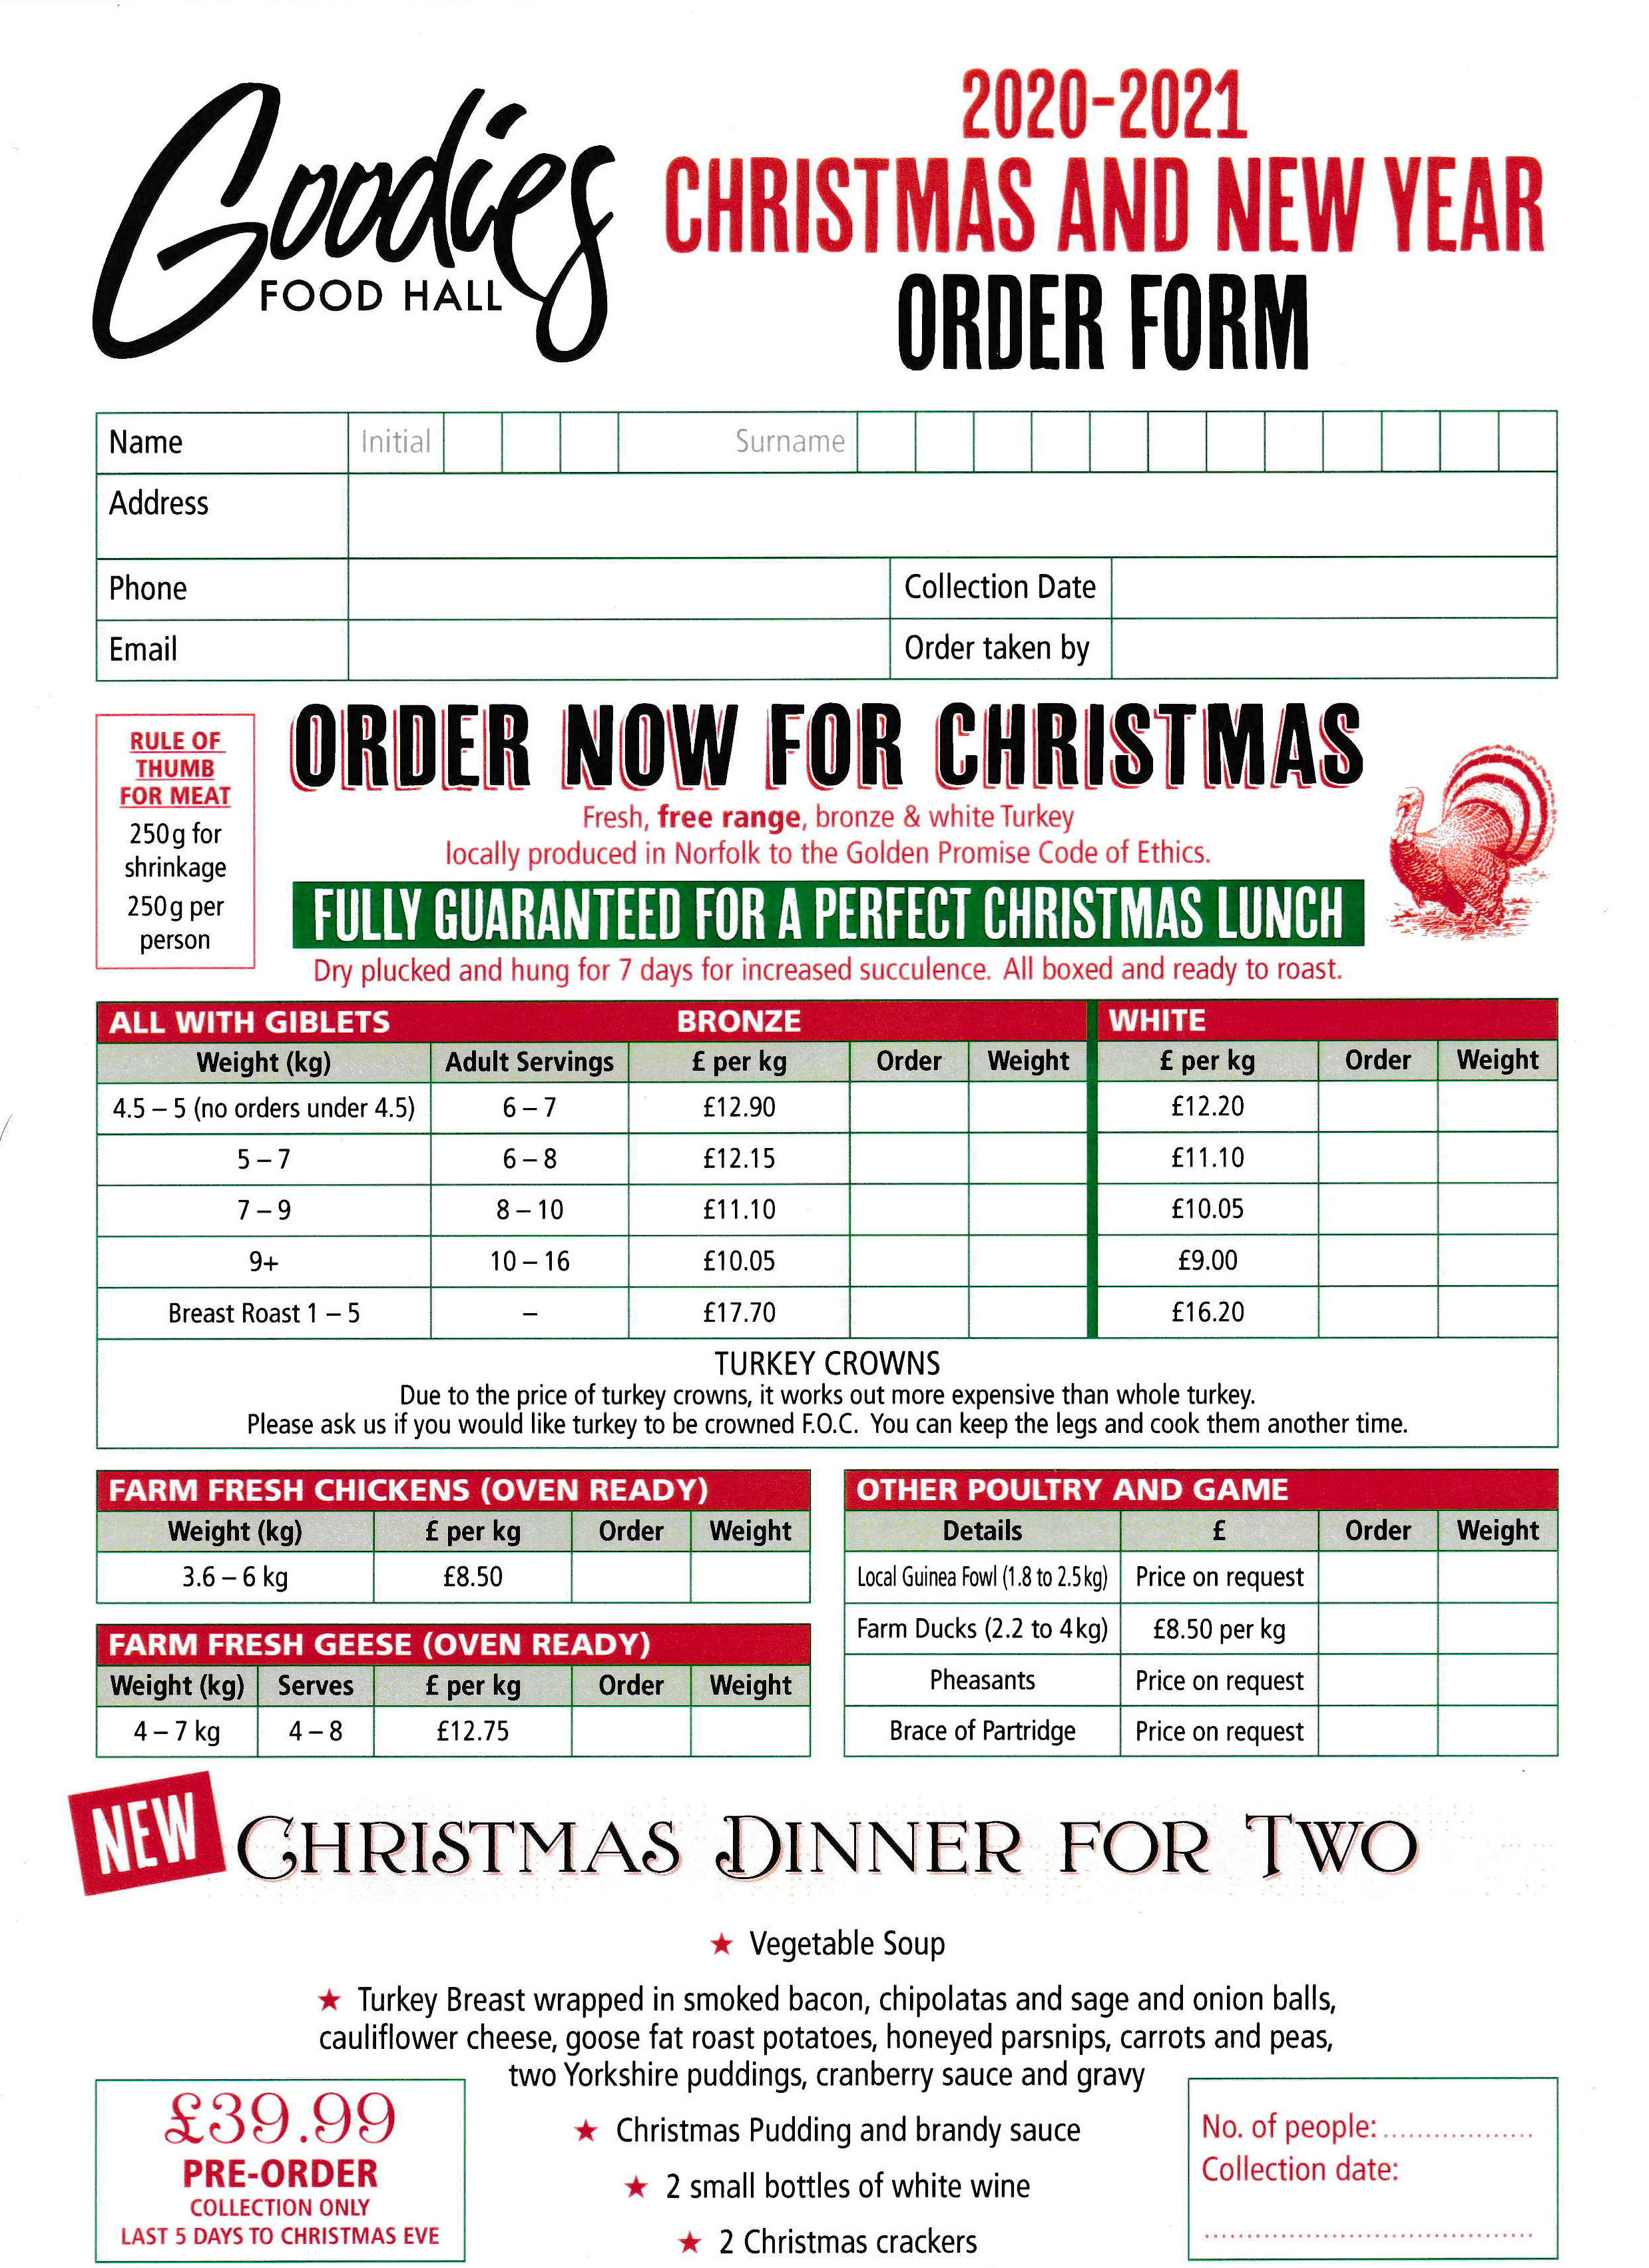 Goodies Food Hall Christmas 2020 Order Form_Page_1